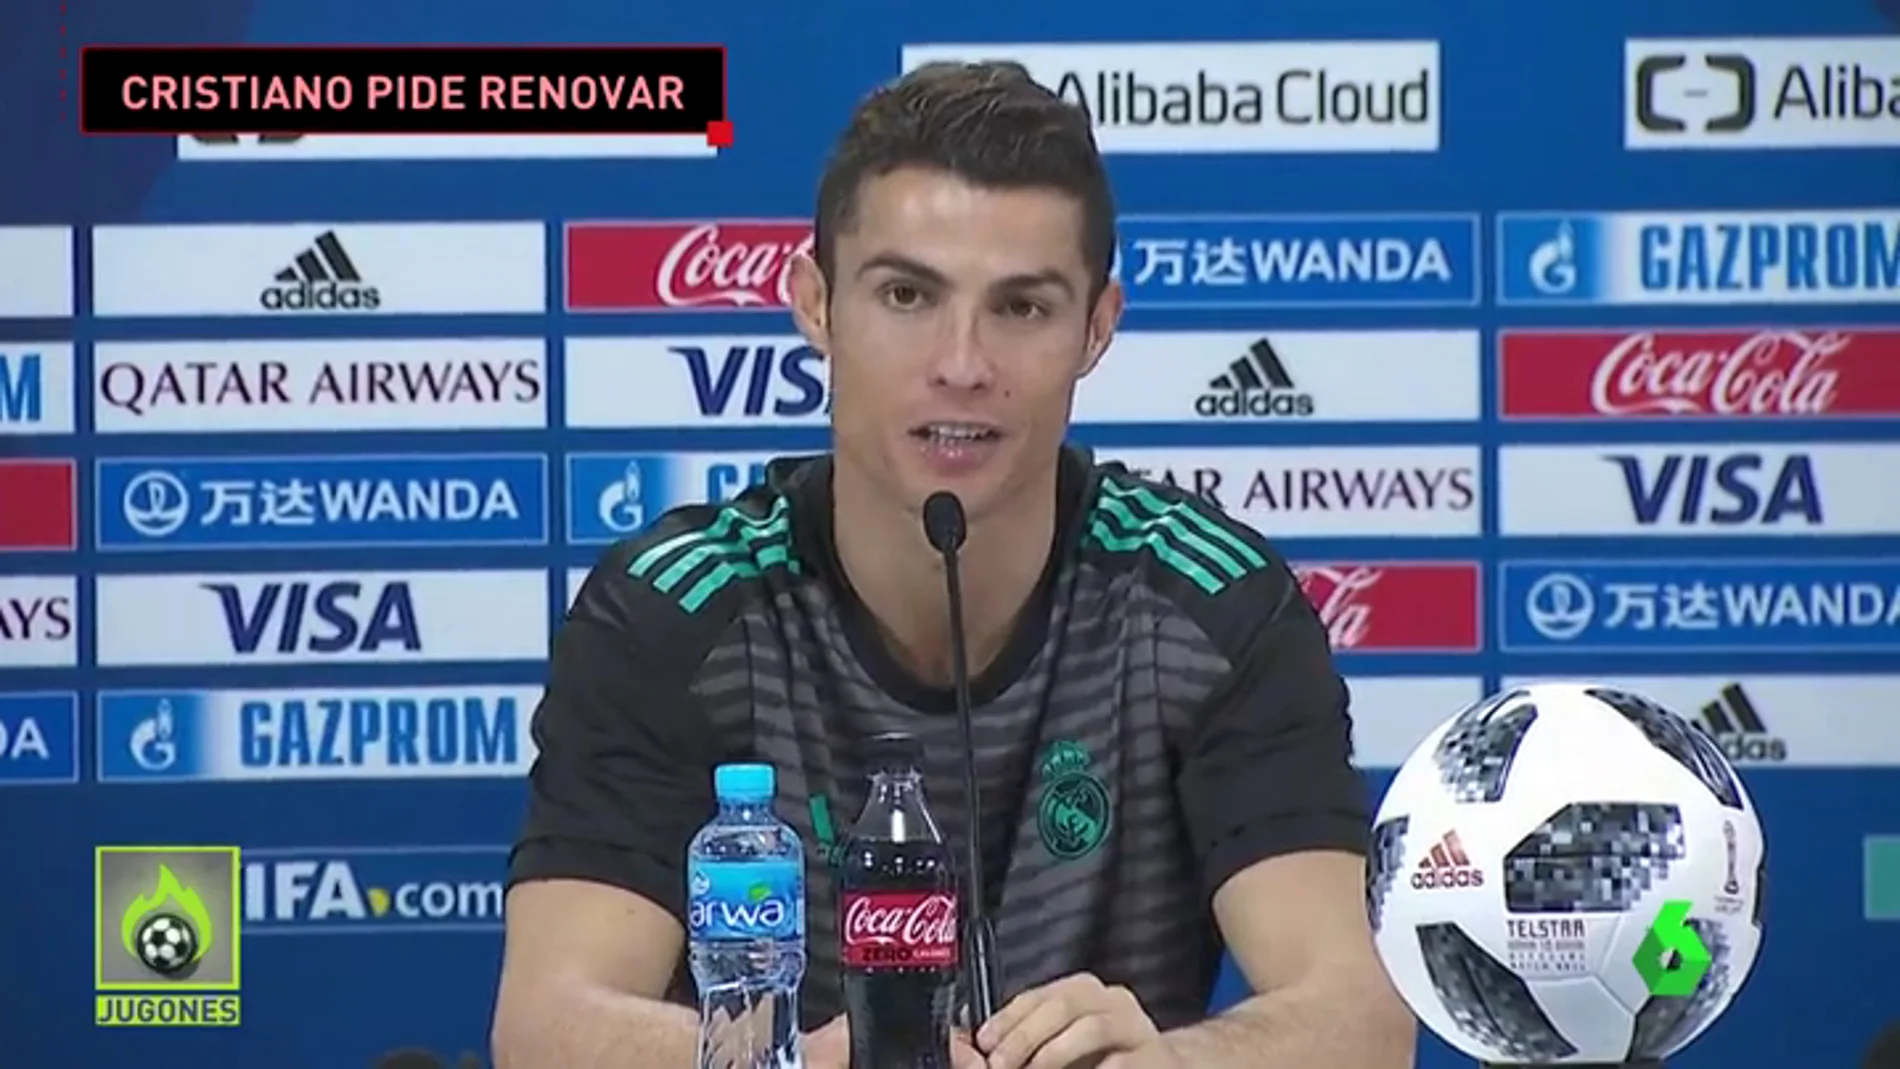 Cristiano Ronaldo pide renovar con el Real Madrid: "Me gustaría mucho...si es posible..."